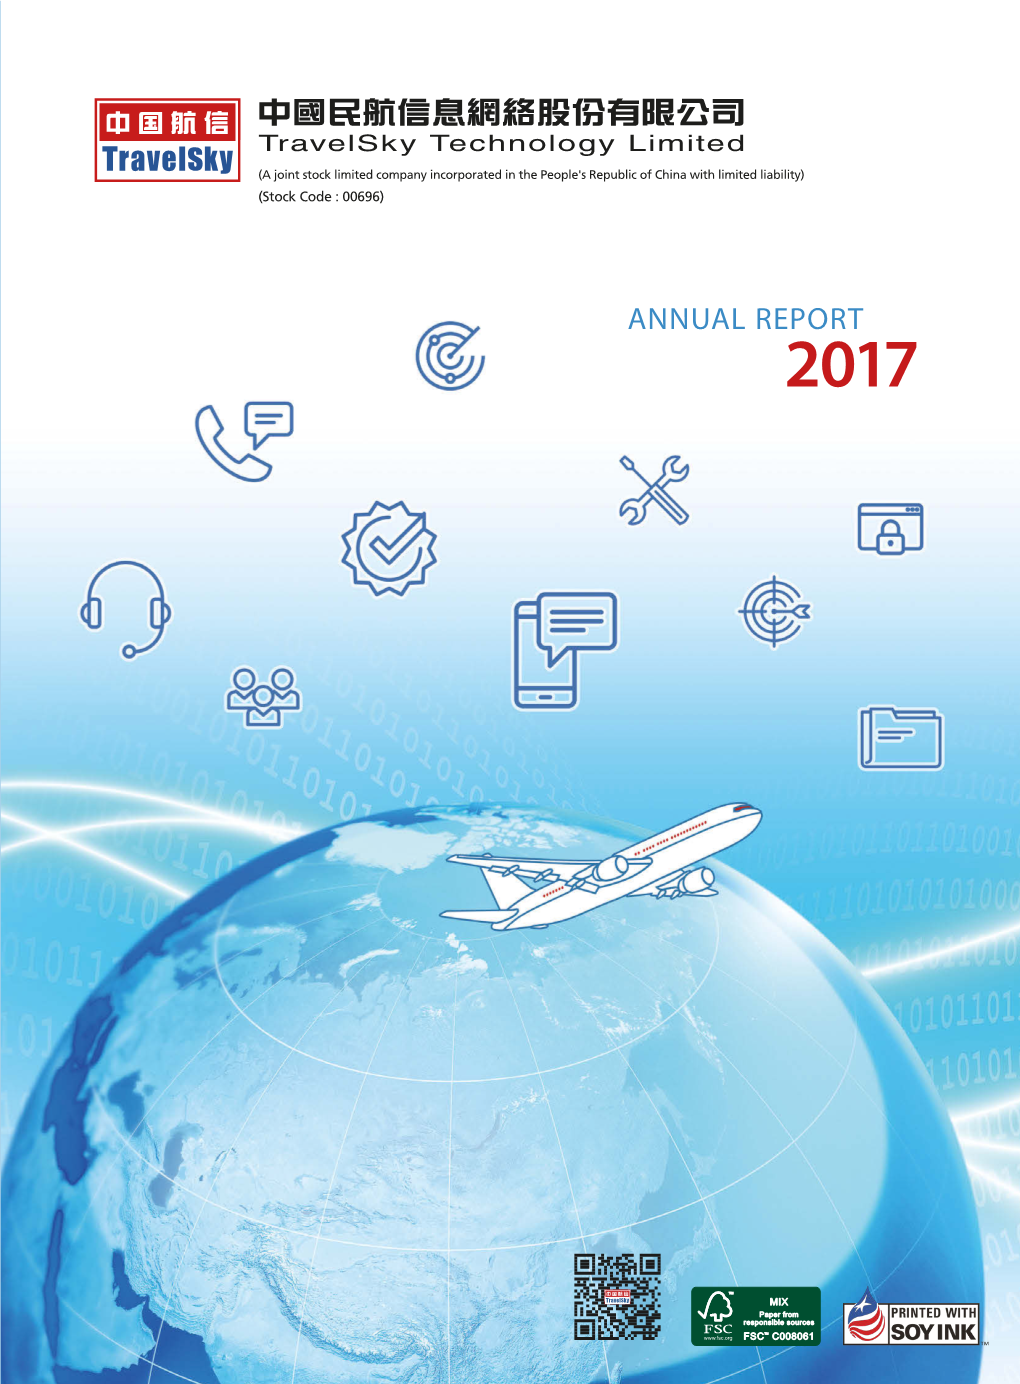 Annual Report 2017 2017 2017 Annual Report 2017